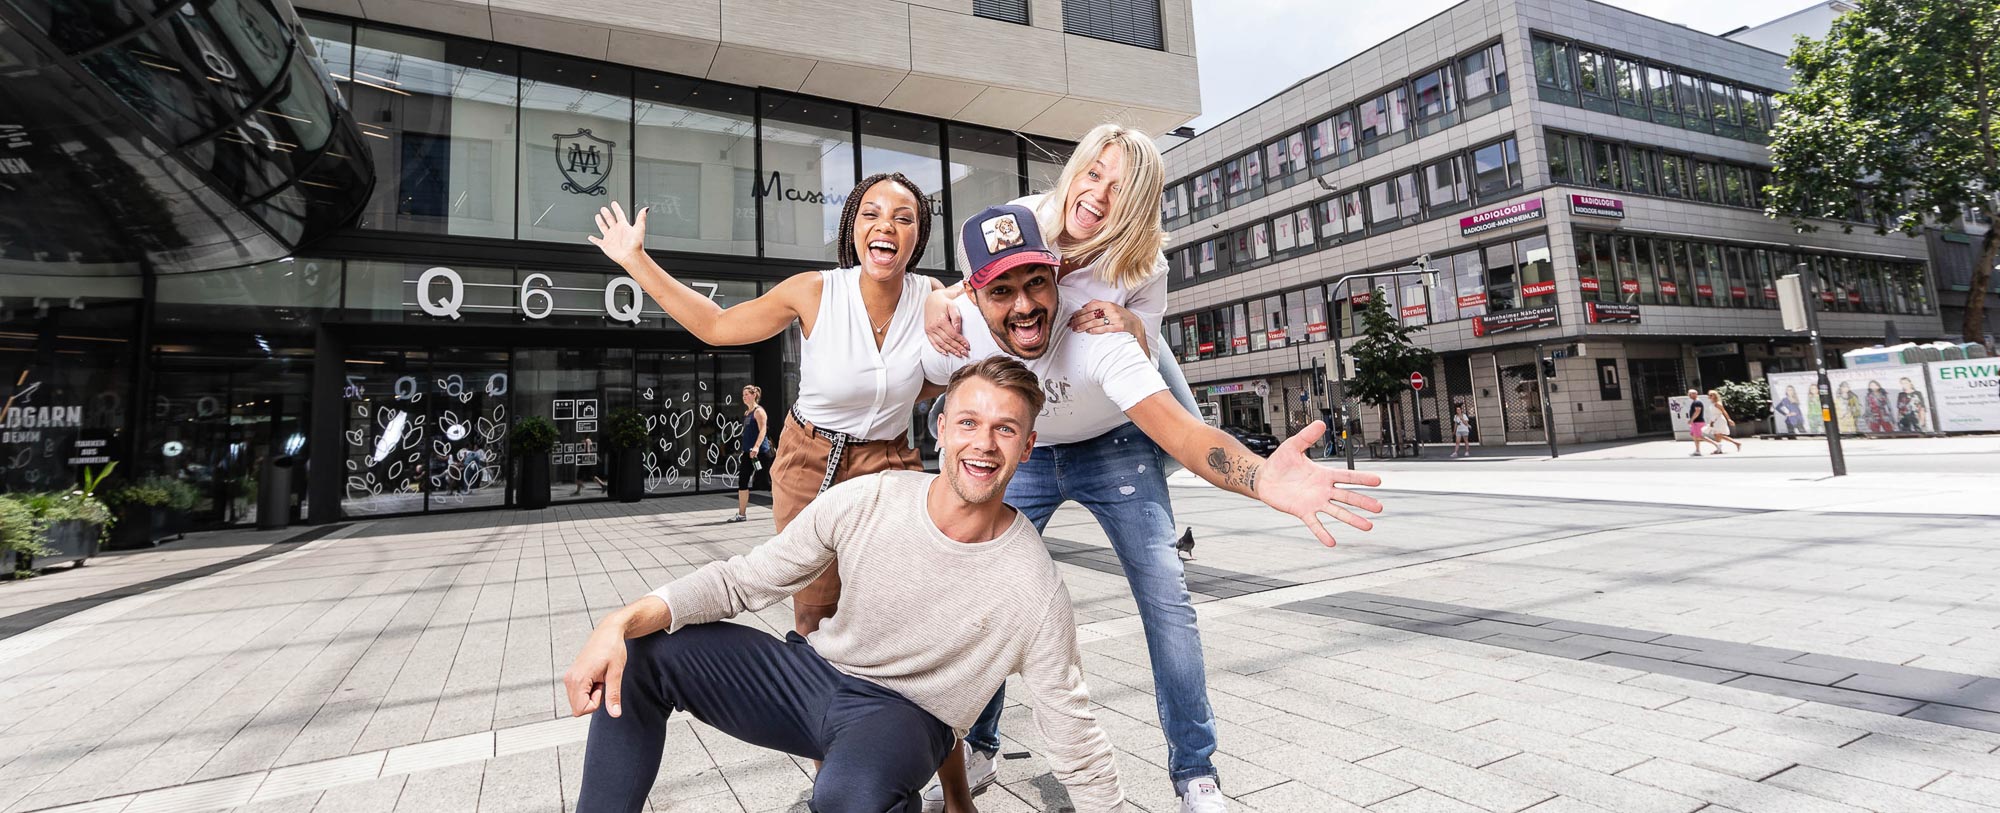 Dieses Bild zeigt vier Personen, die fröhlich auf dem Münzplatz zusammen lächeln. 